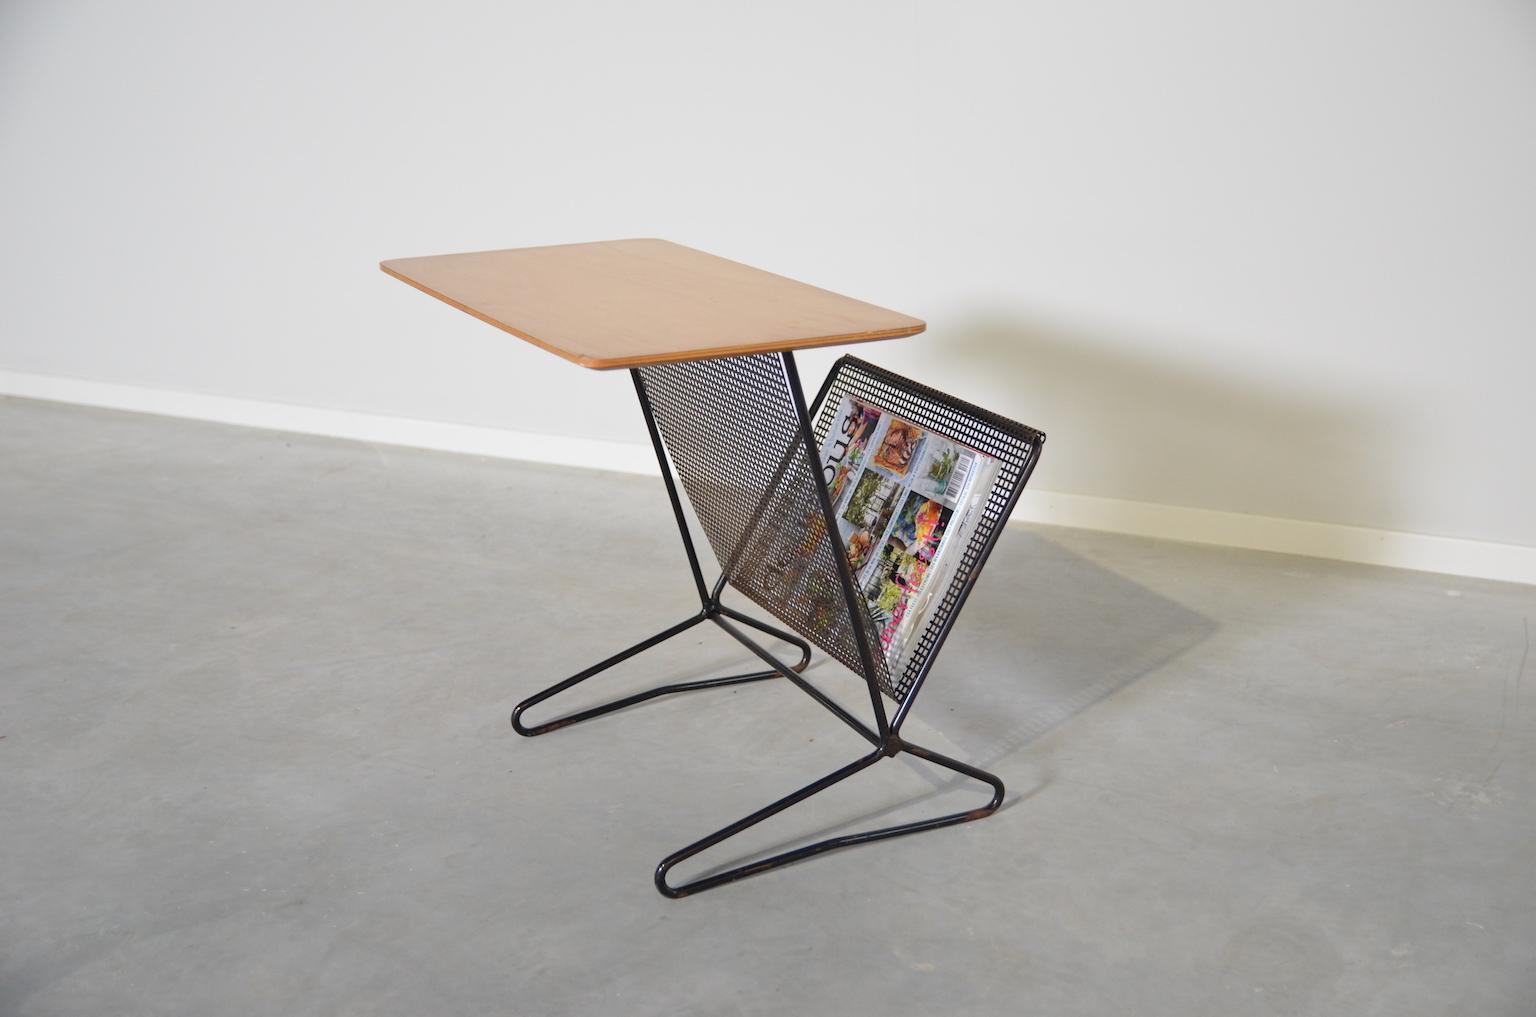 Midcentury Beistelltisch mit Zeitschriftenständer TM05 von dem niederländischen Designer Cees Braakman für Pastoe. Tischplatte aus Birke auf schwarzem Metallgestell. Der Magazinträger ist aus gelochtem Metallblech gefertigt. Die Tischplatte misst 55